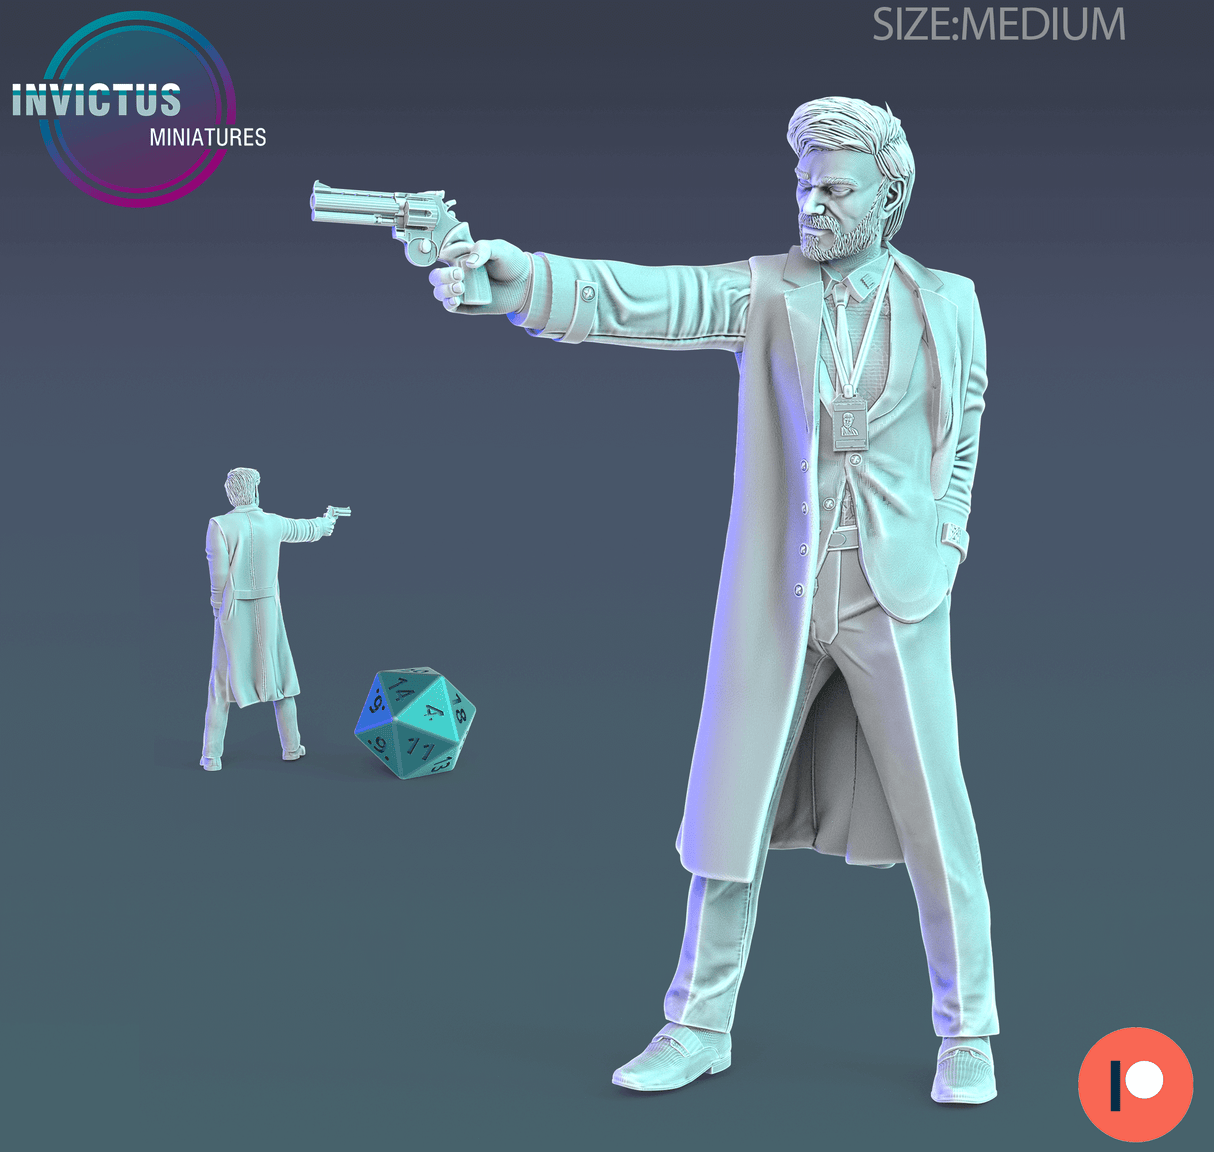 Miniatur eines Wissenschaftlers mit Revolver, bereit, sich gegen Gefahren zu verteidigen